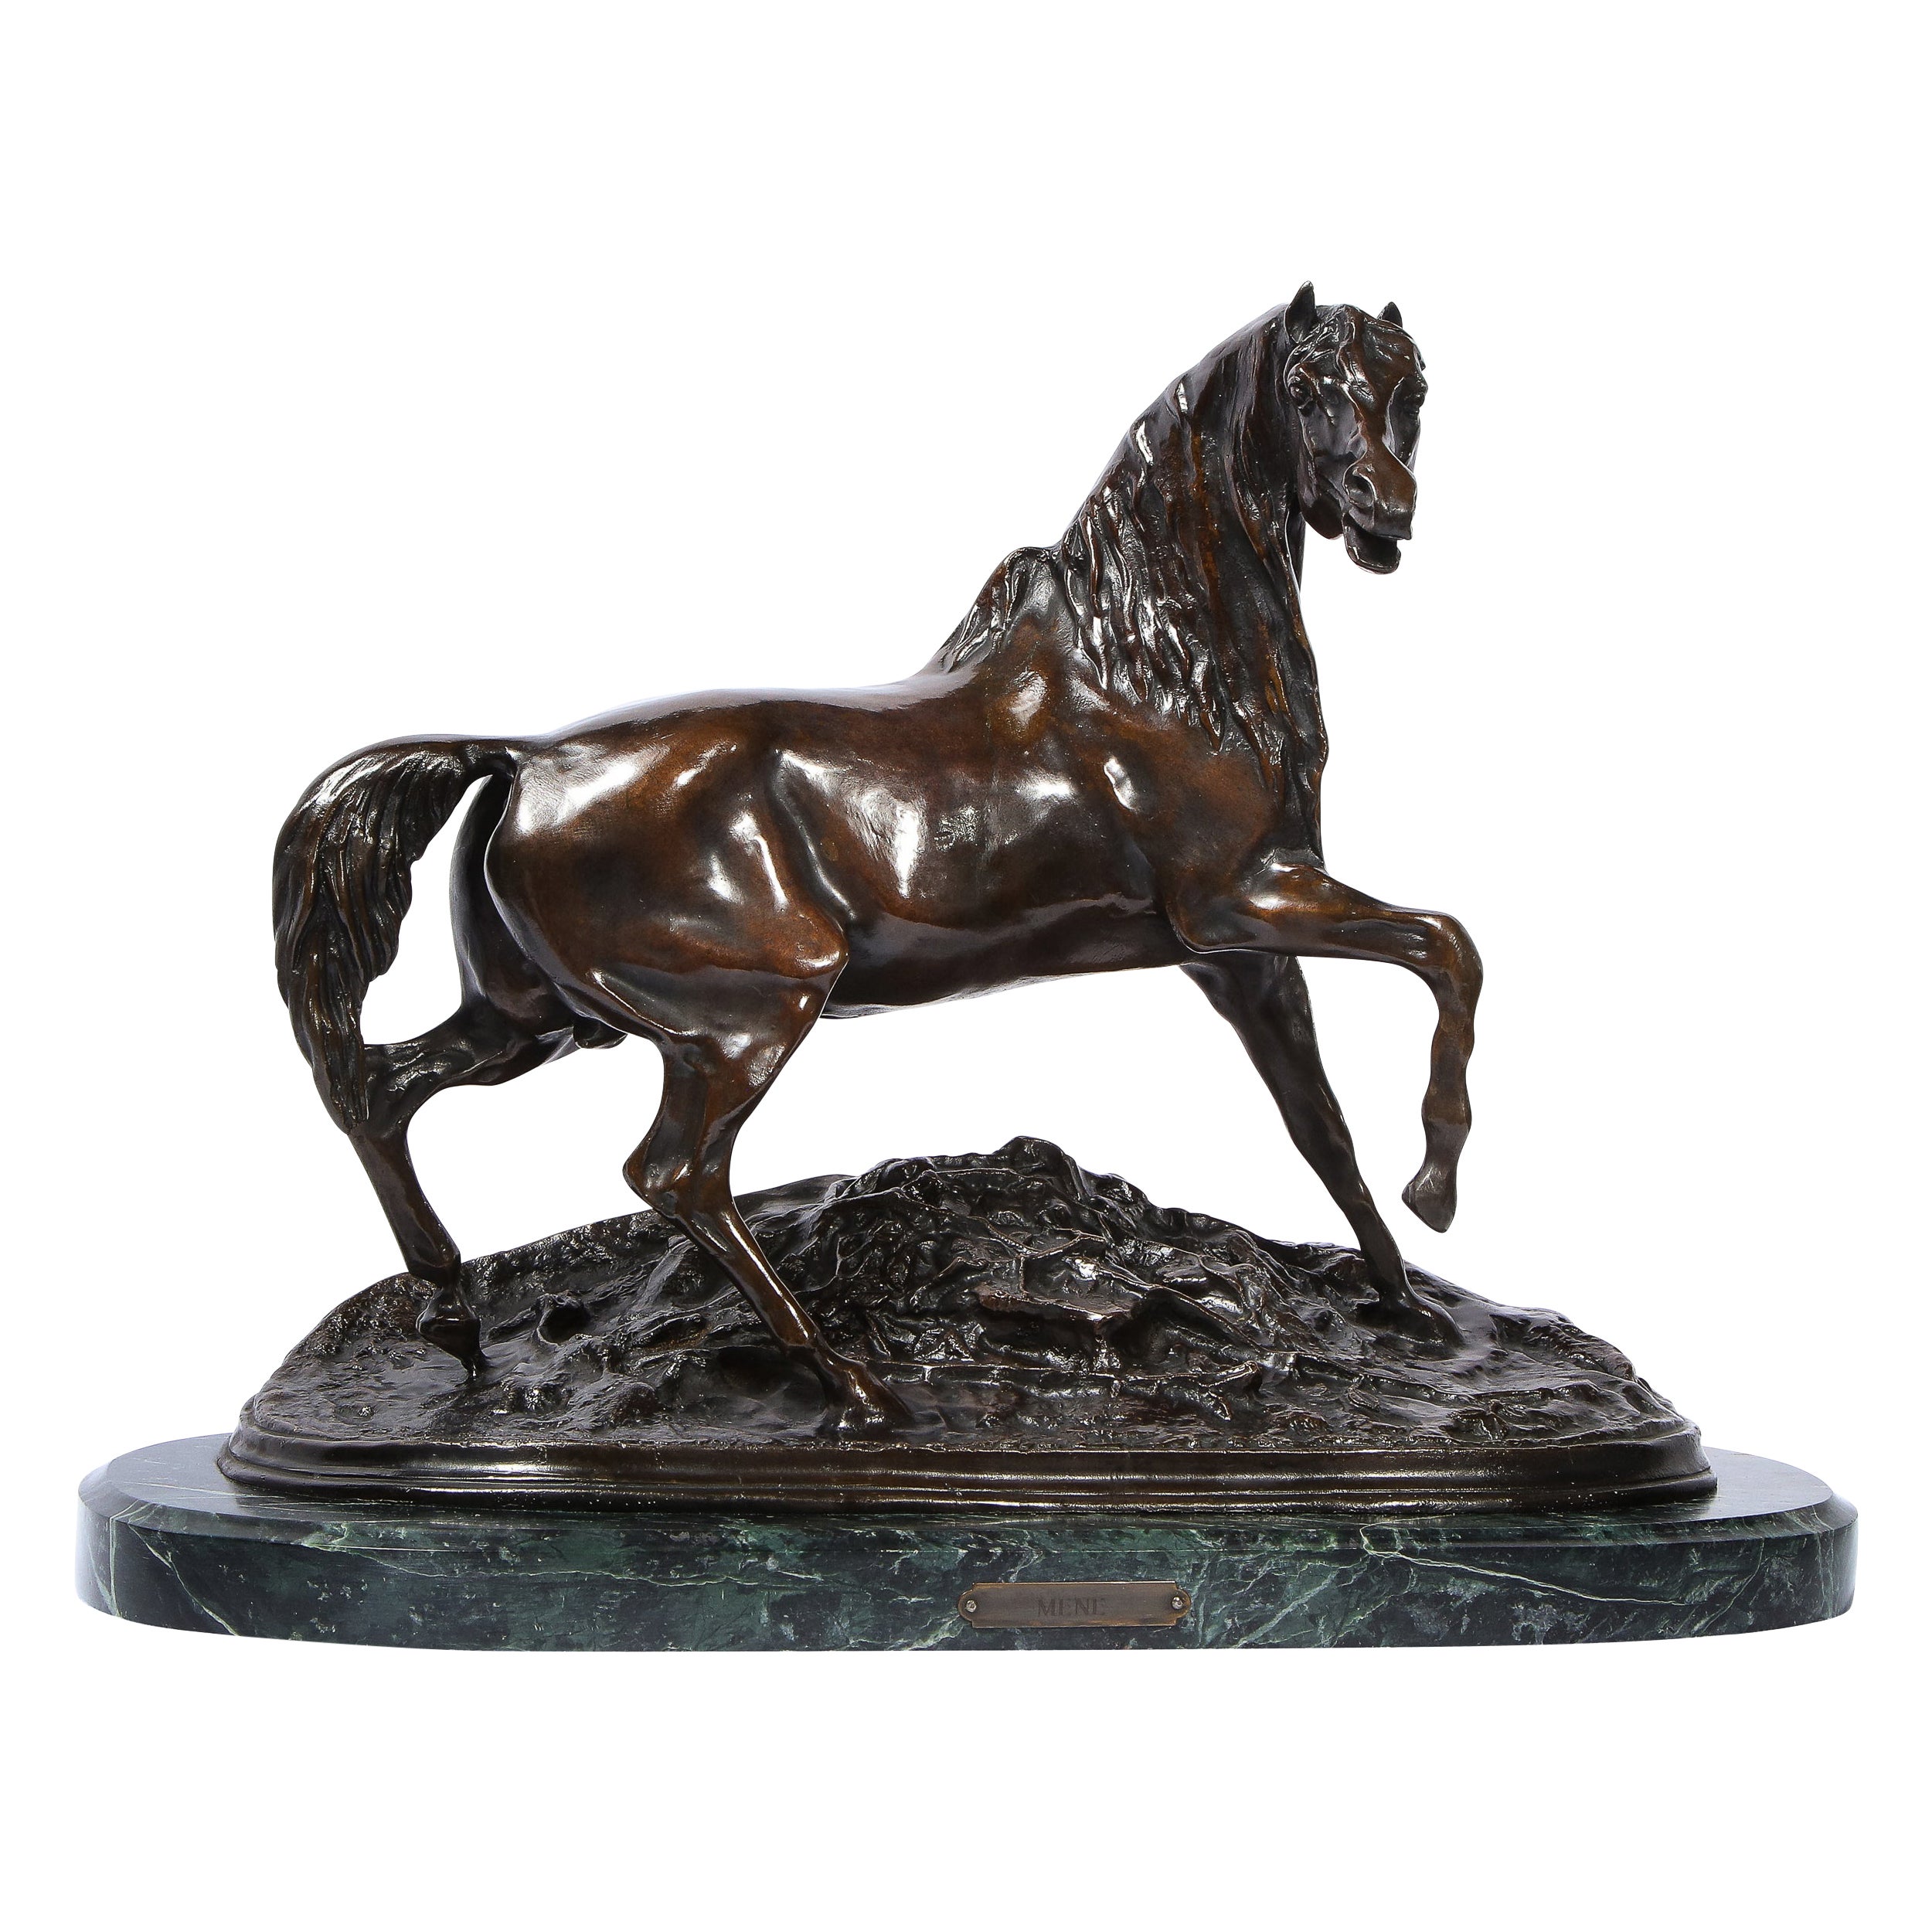 Bronzeskulptur eines Stallions aus dem 19. Jahrhundert auf Marmorsockel, signiert P.J. Mne